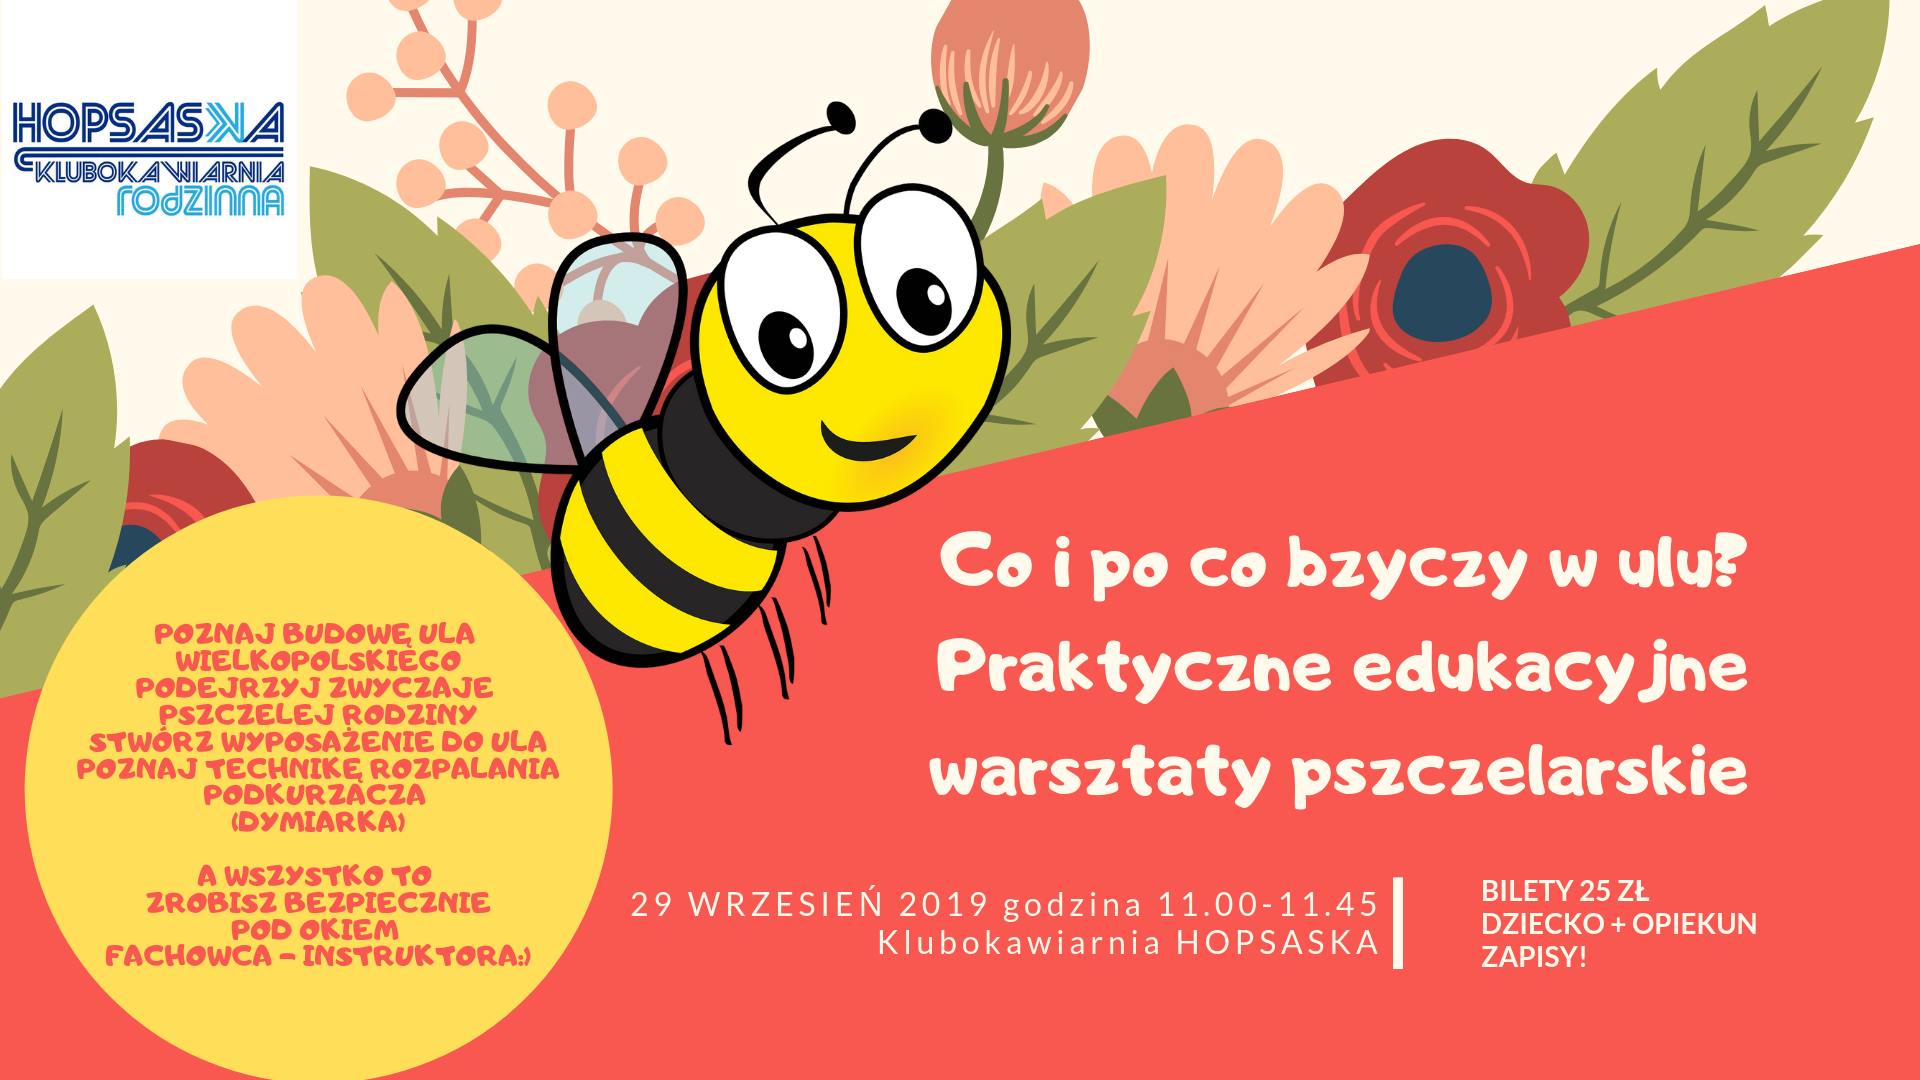 Praktyczne edukacyjne warsztaty pszczelarskie dla dzieci od lat 3